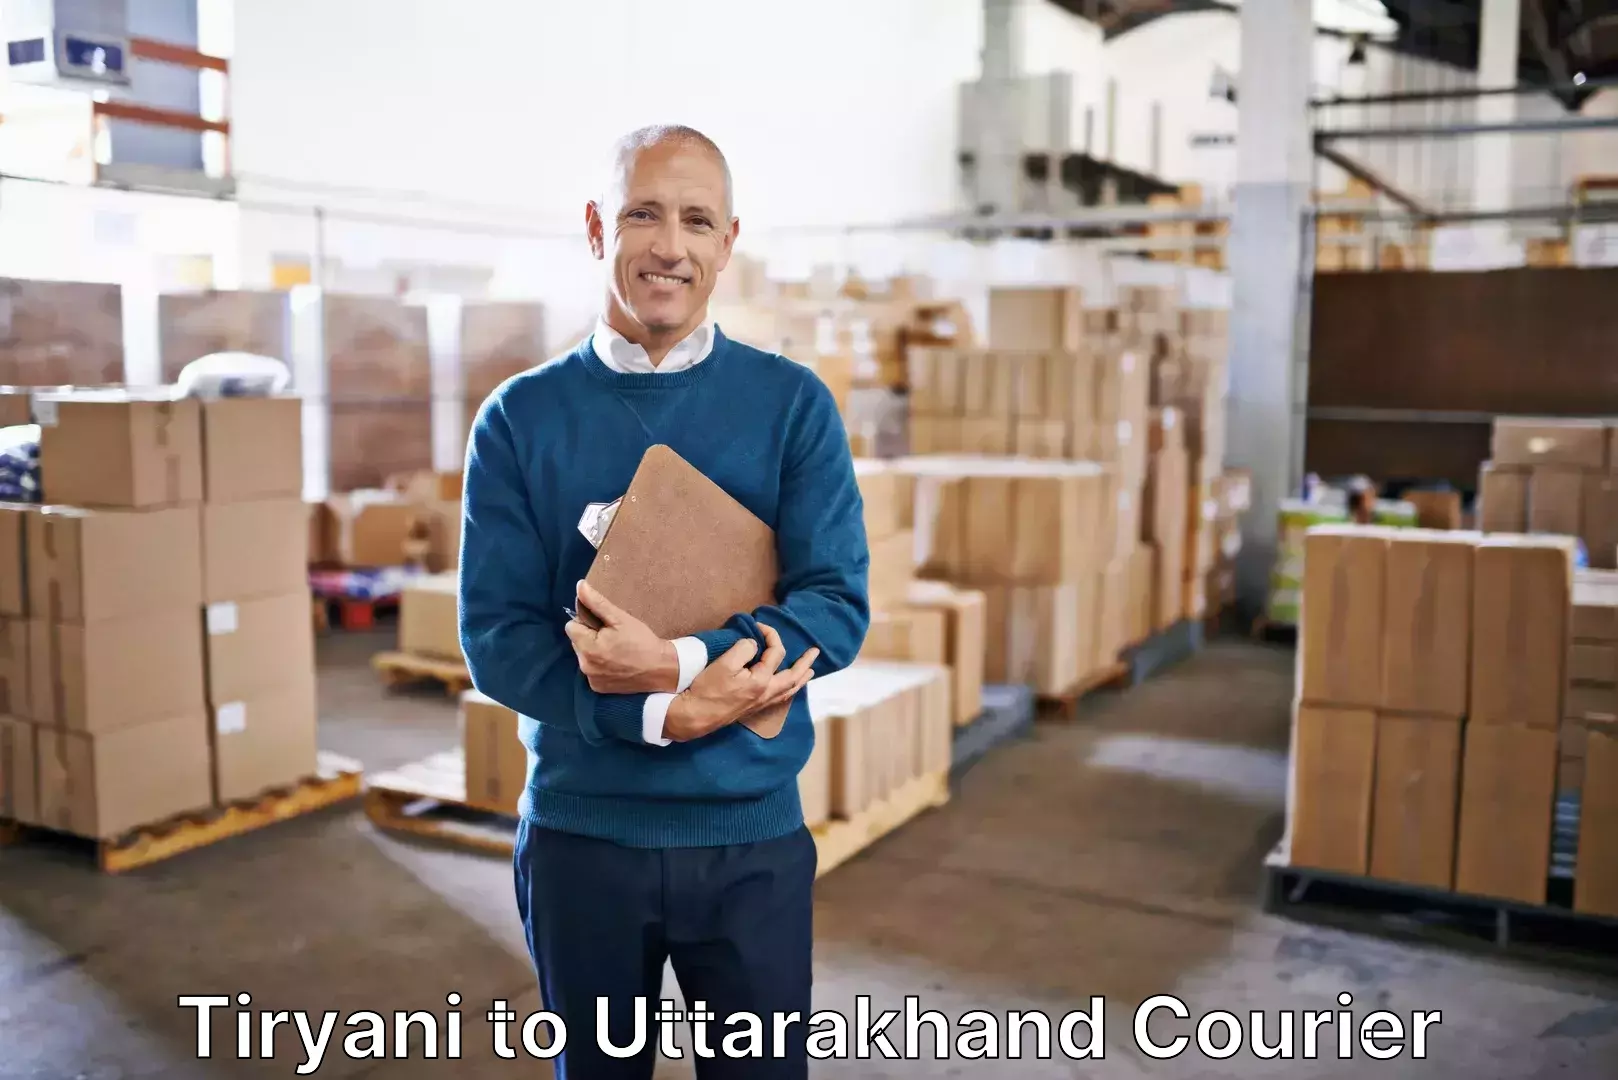 Luggage delivery operations Tiryani to Uttarakhand